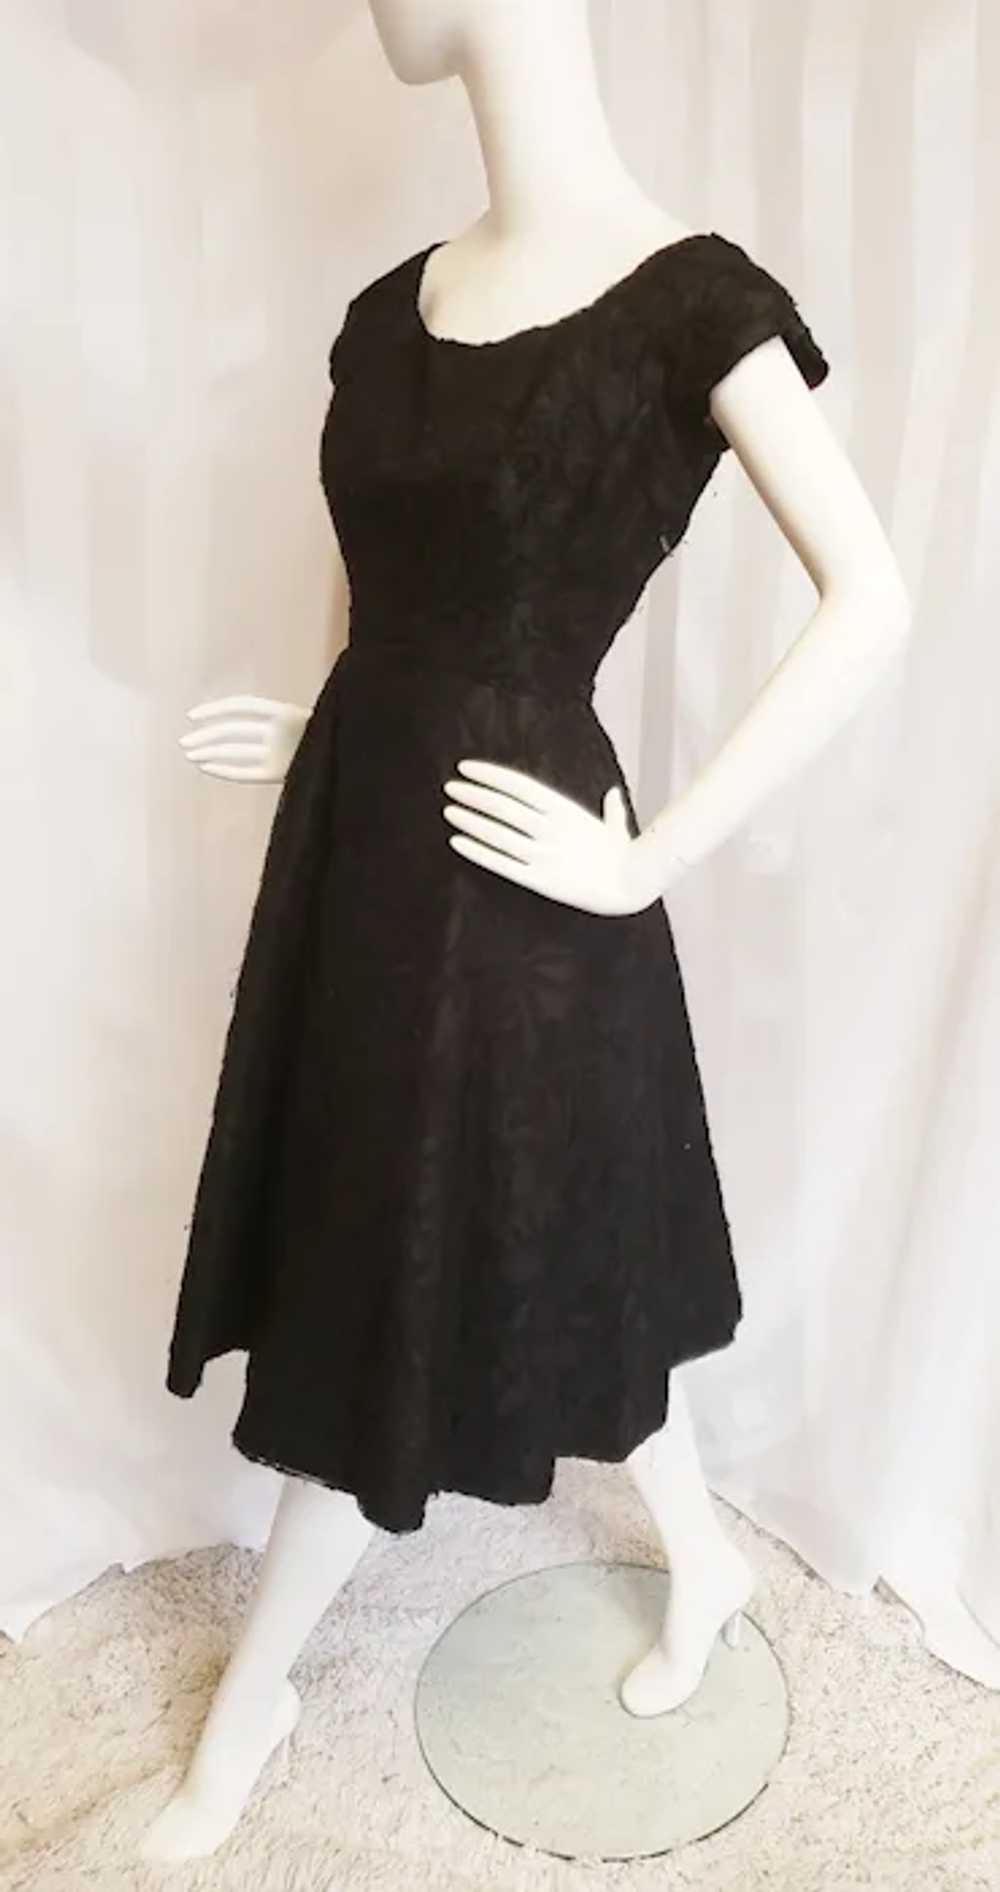 Hattie Carnegie 1950's Black Lace Cocktail Dress - image 10